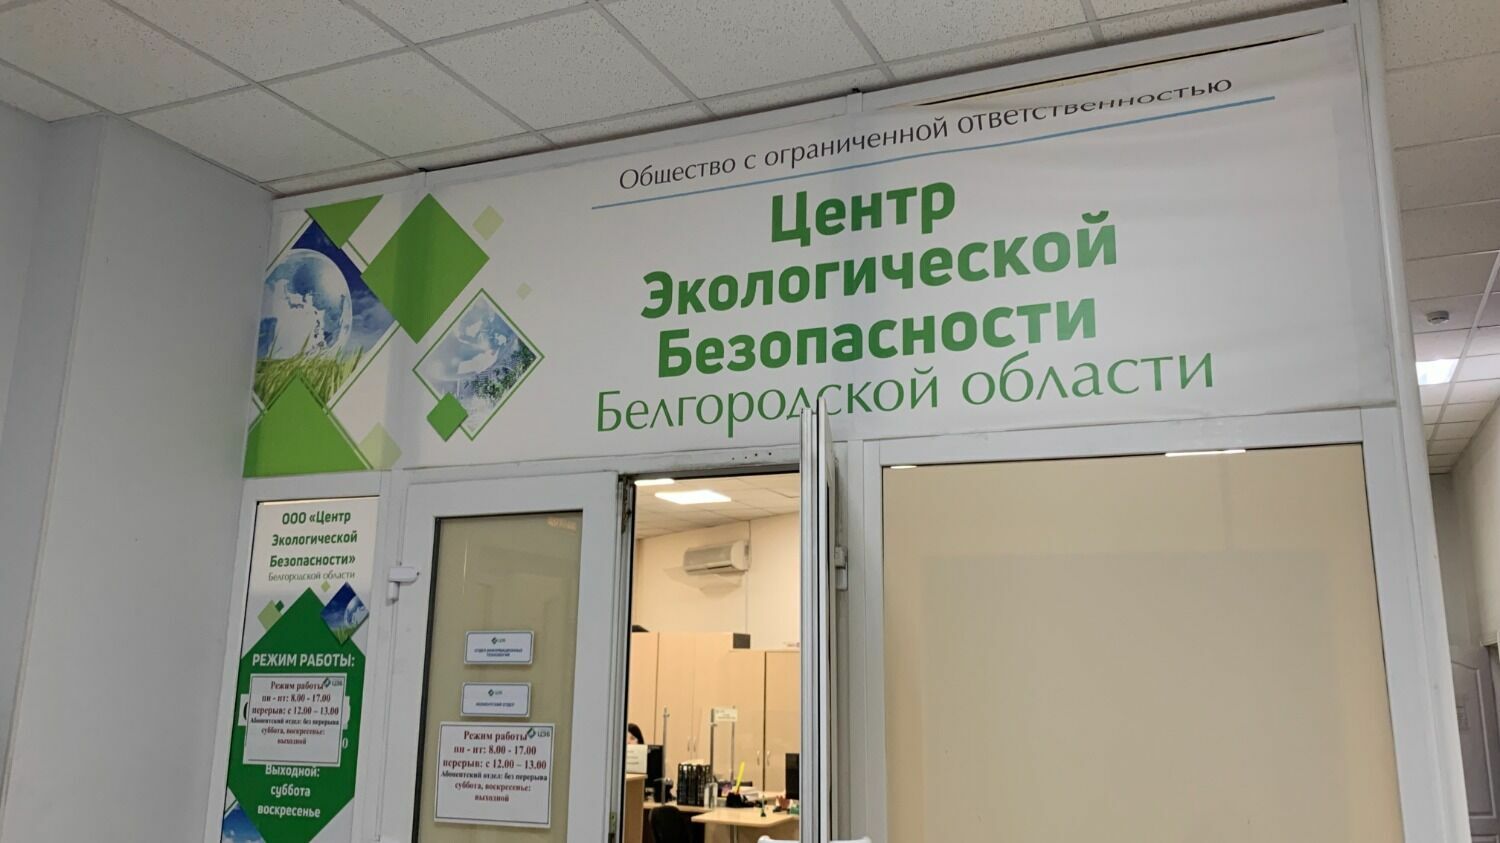 Центр экологической безопасности Белгородской области. ЦЭБ Алексеевка телефон.